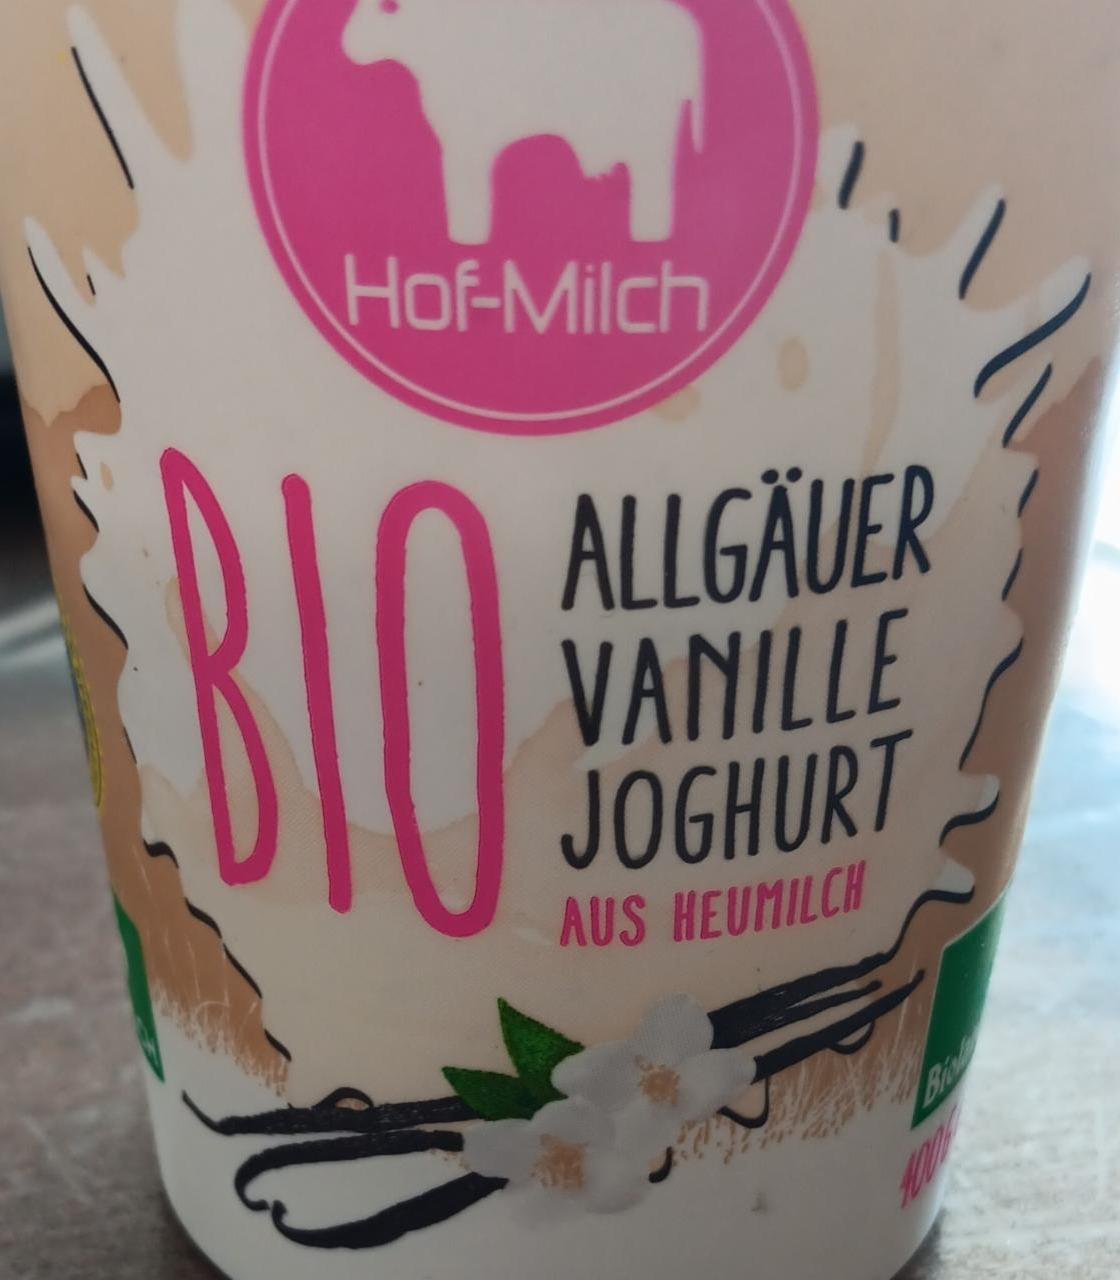 Fotografie - Bio Allgäuer Vanille Joghurt Hof-Milch